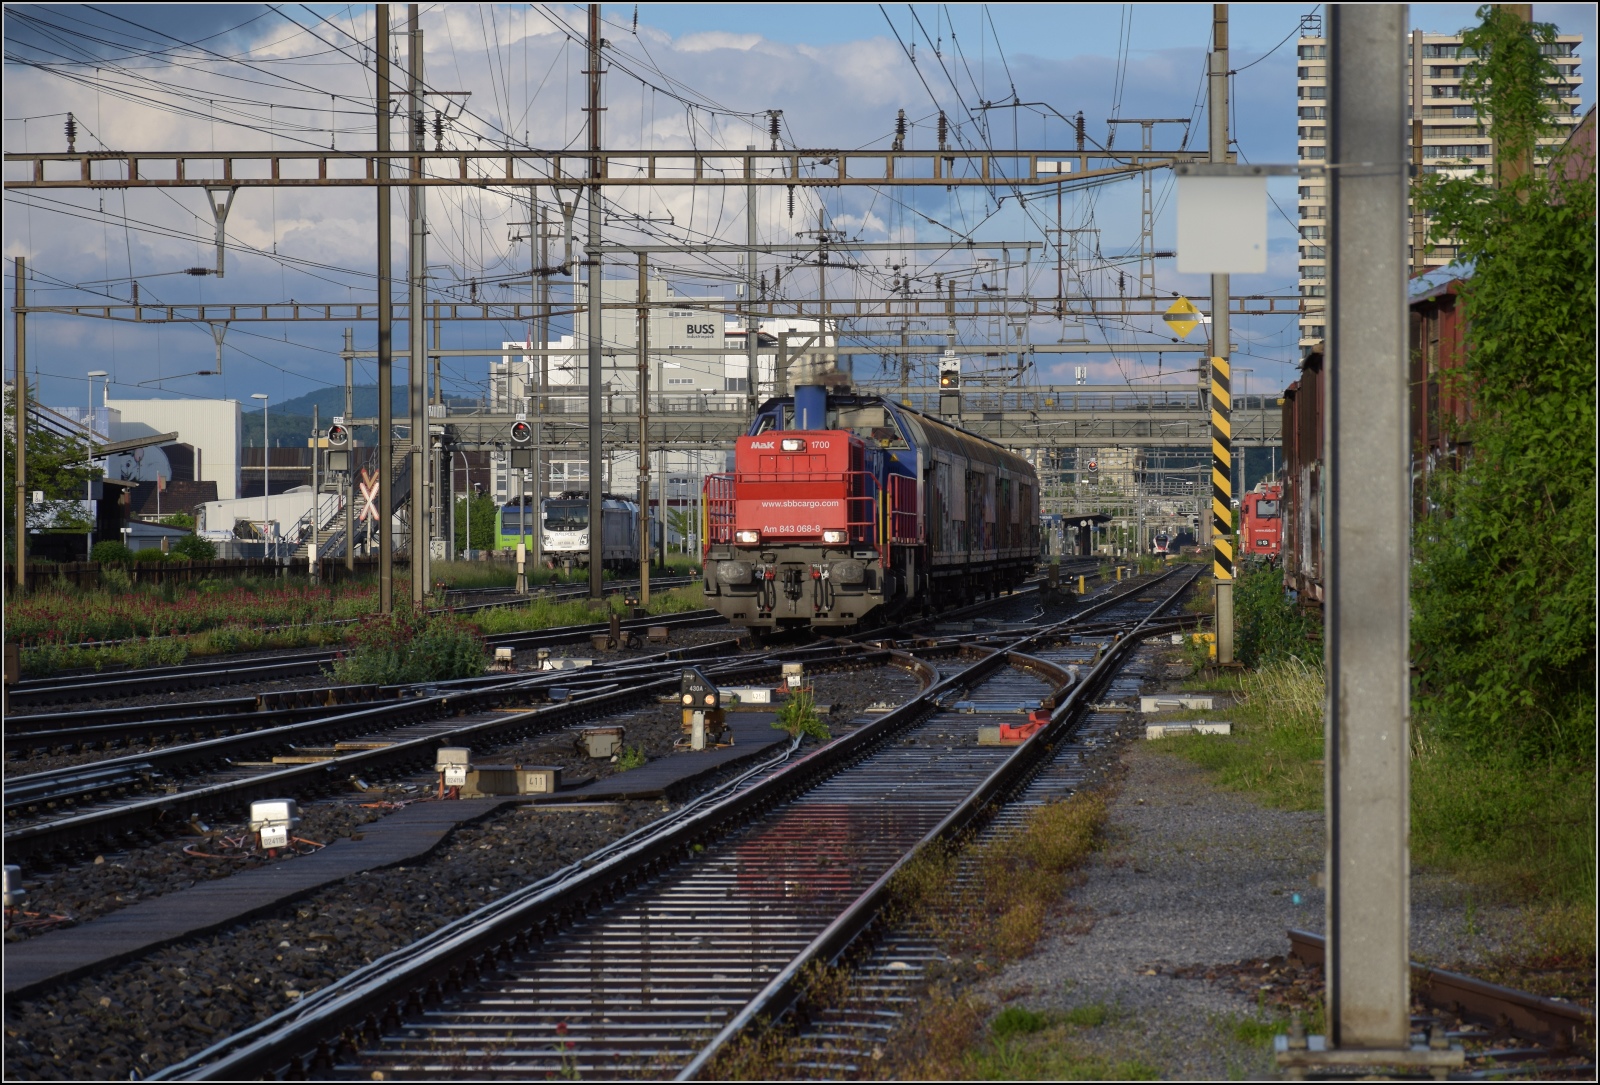 Schlechtwettertag in Pratteln. 

Ein Nahgüterzug mit Am 843 068 kommt die Hauensteinlinie entlanggefahren. Mai 2023.